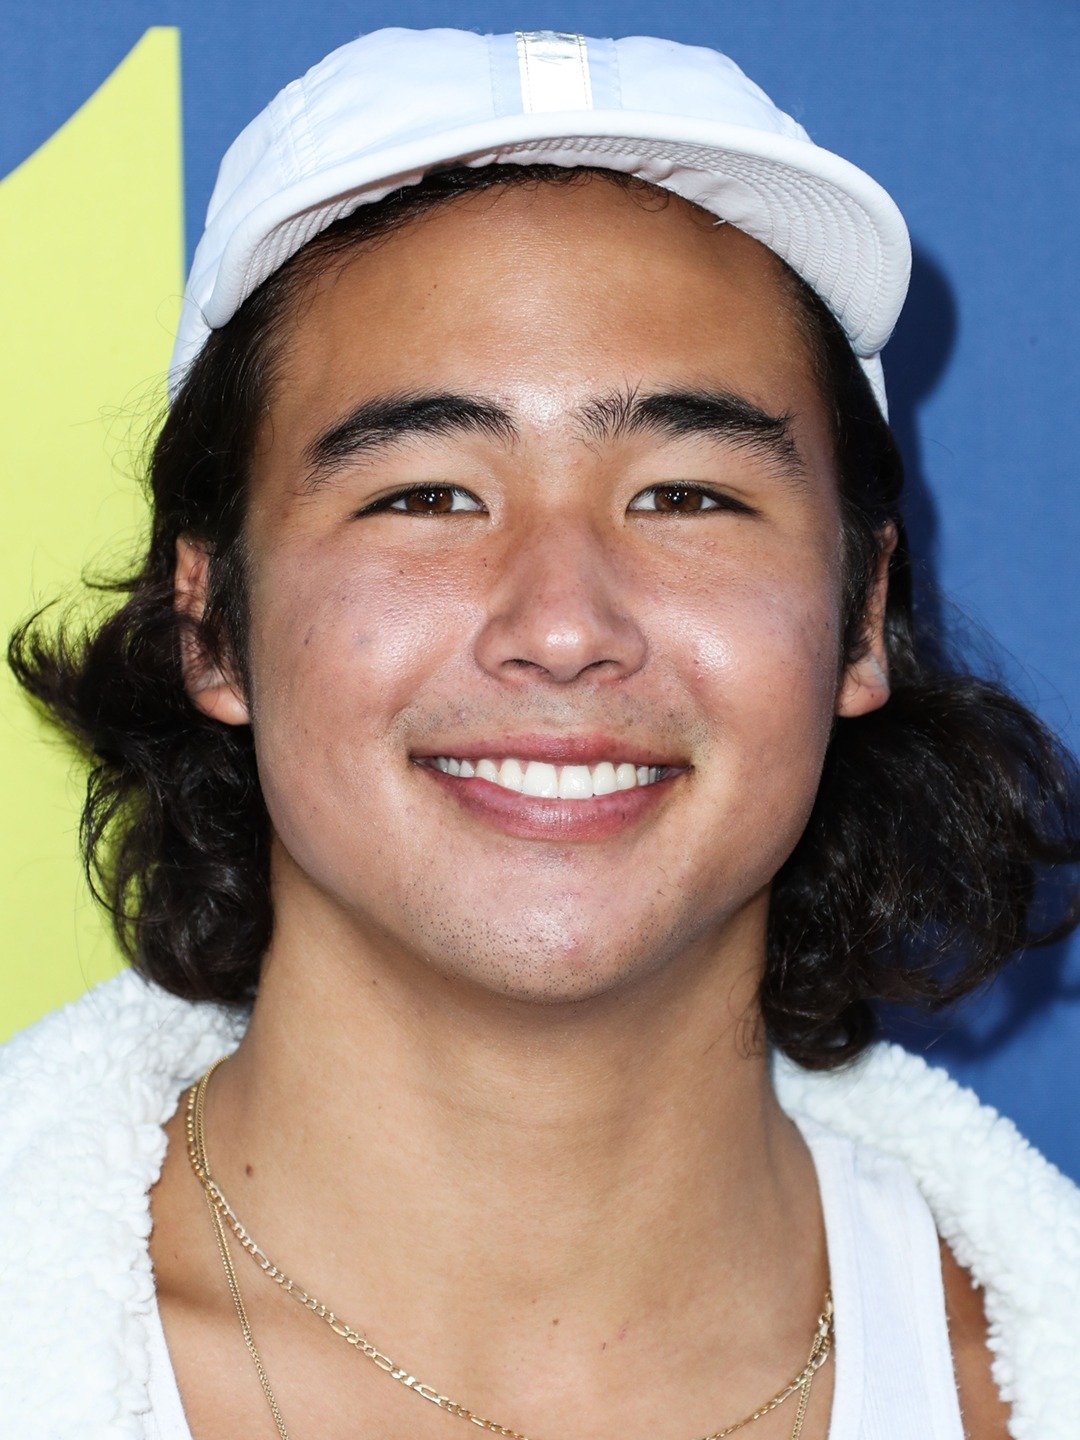 Nico Hiraga - Actor, Skateboarder